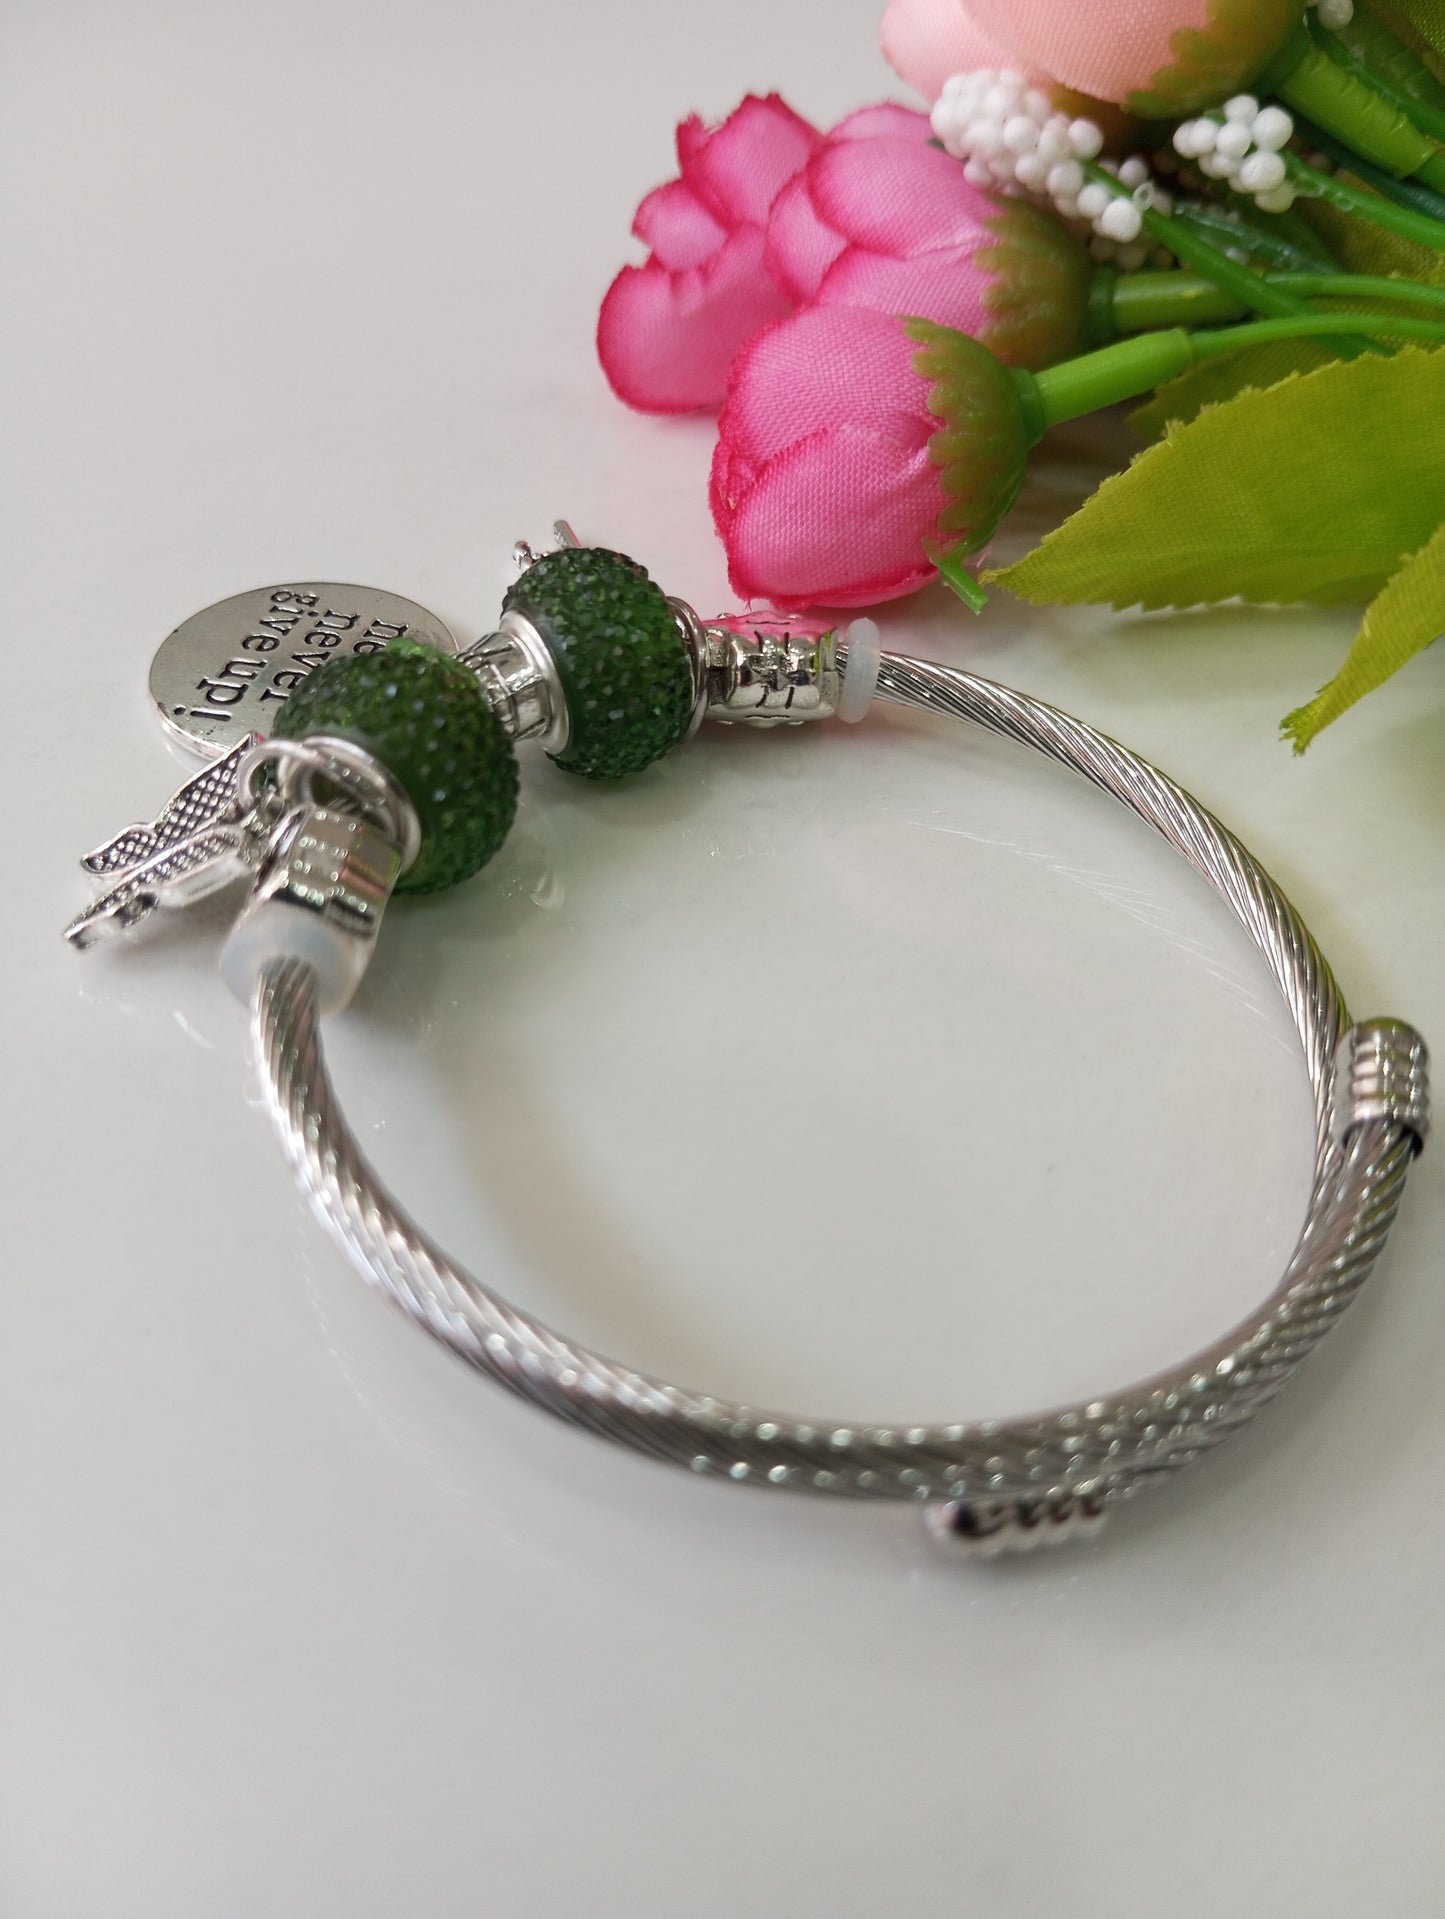 Adjustable Bracelet- Green and Silver